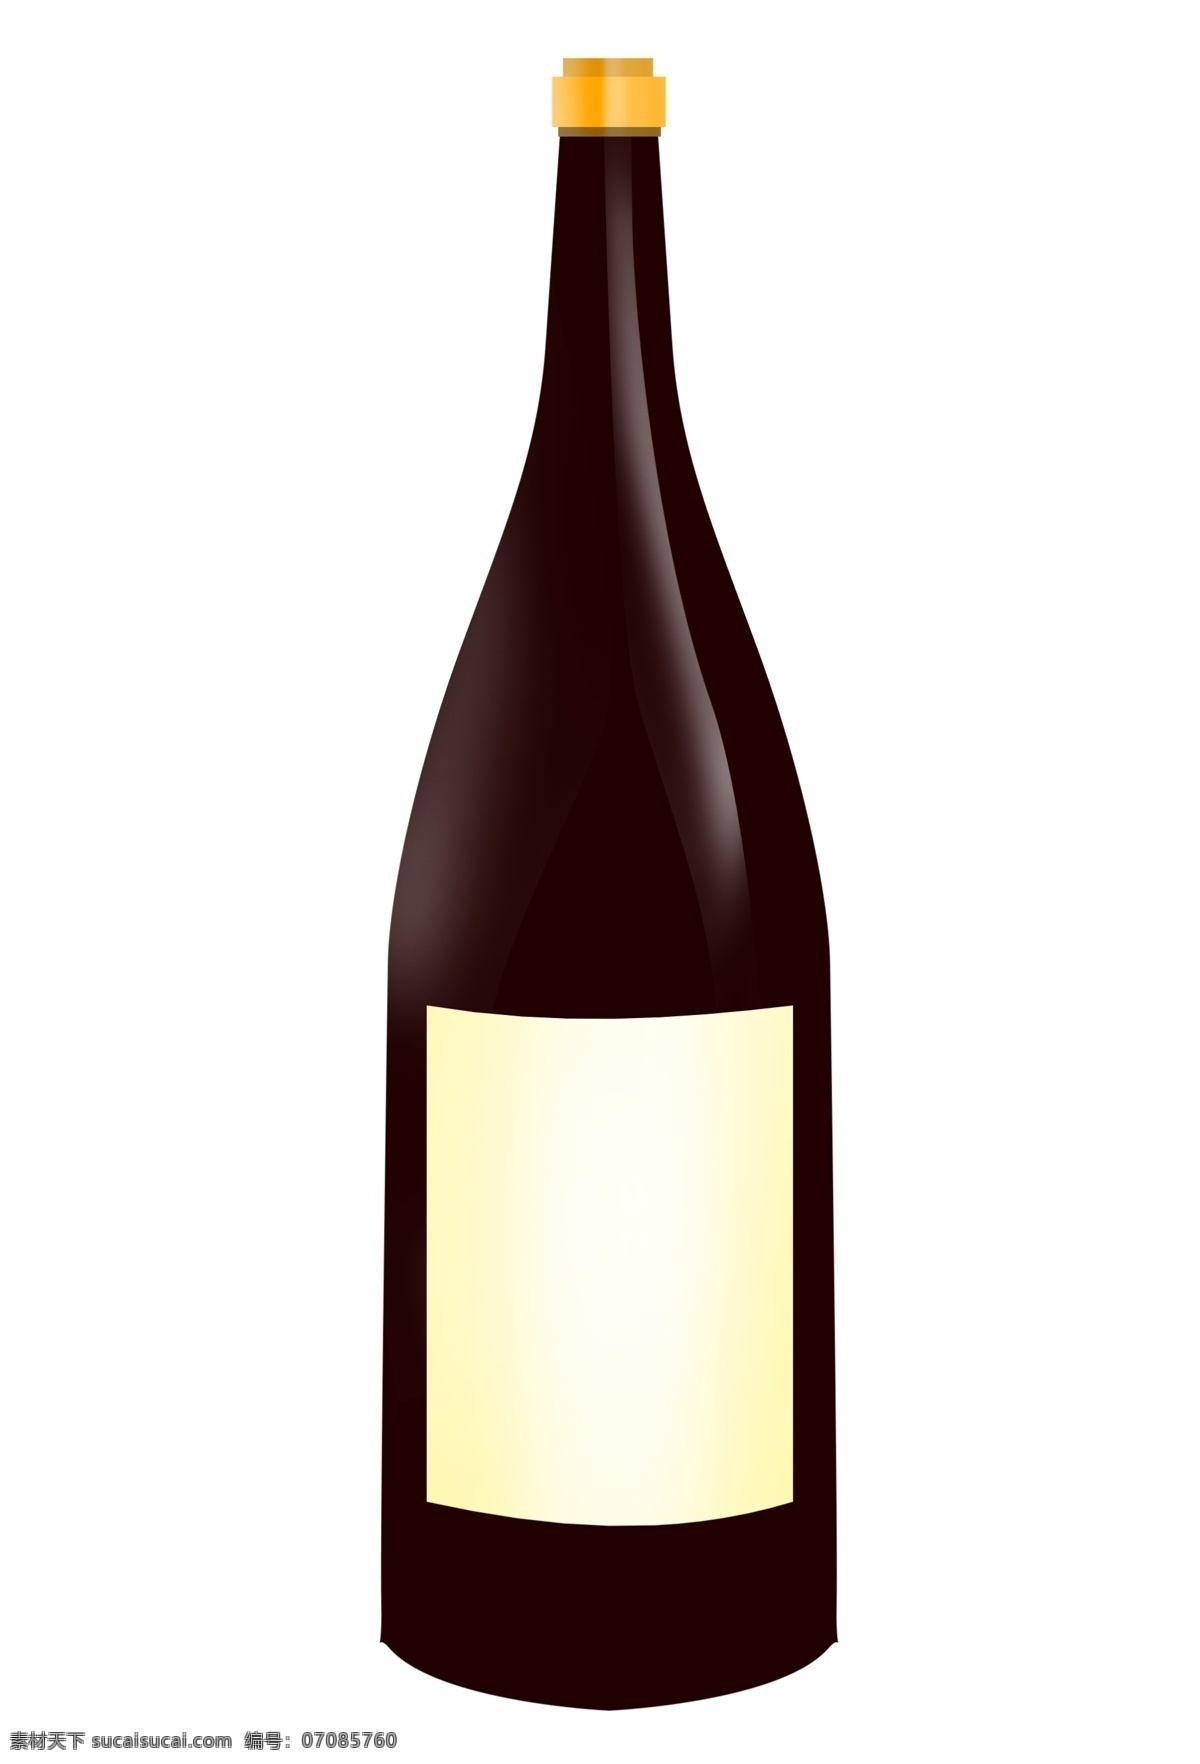 白兰地 红酒 瓶 插画 一瓶红酒 红酒瓶 一瓶红酒插图 瓶装红酒 高档红酒 葡萄酒